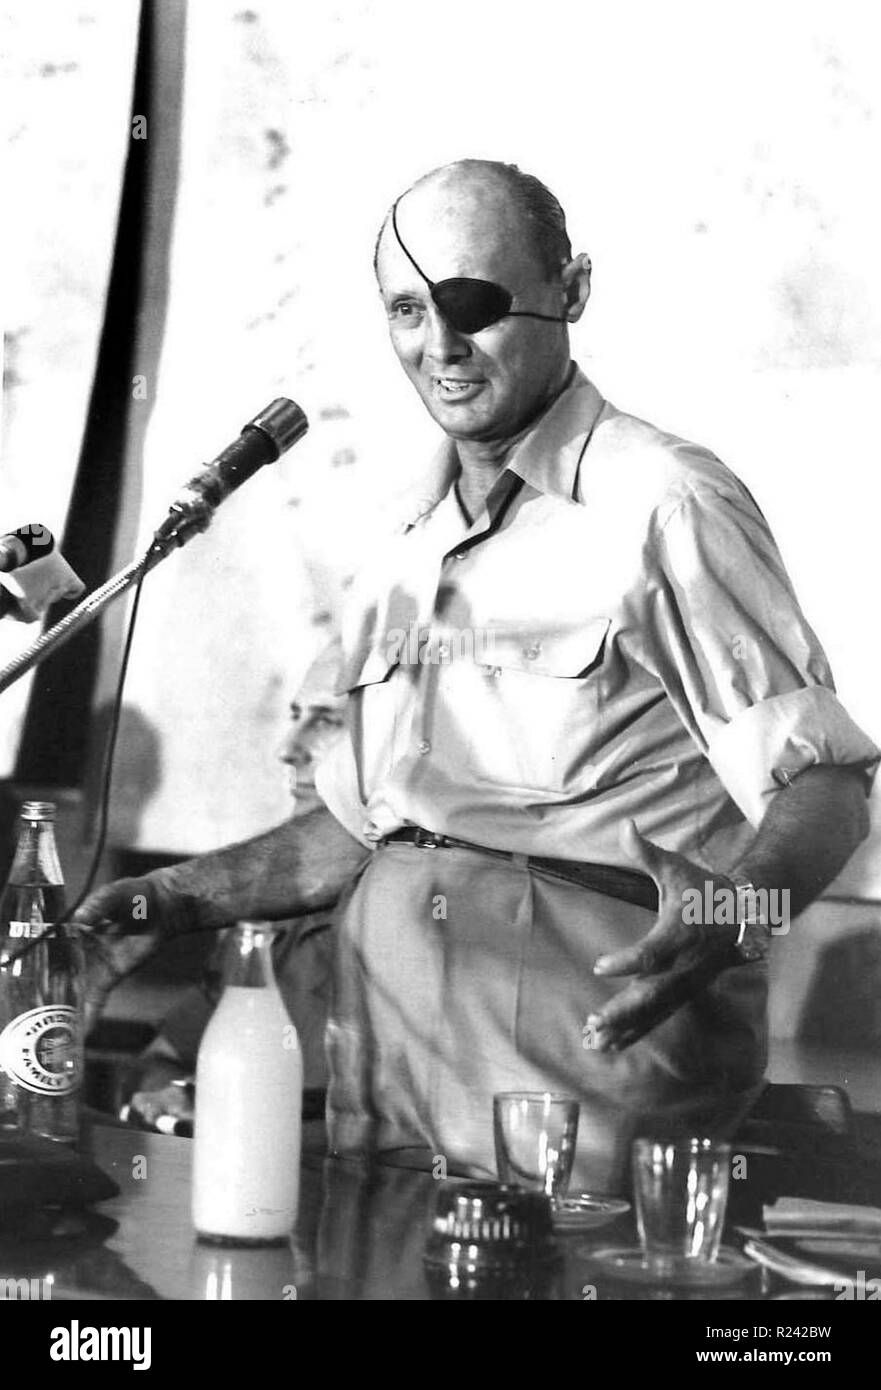 Moshe Dayan (1915-1981), israelischer militärischer Führer und Politiker. Generalstabschef der israelischen Streitkräfte (1953-1958). Verteidigungsminister während des Sechs-Tage-Krieges Stockfoto